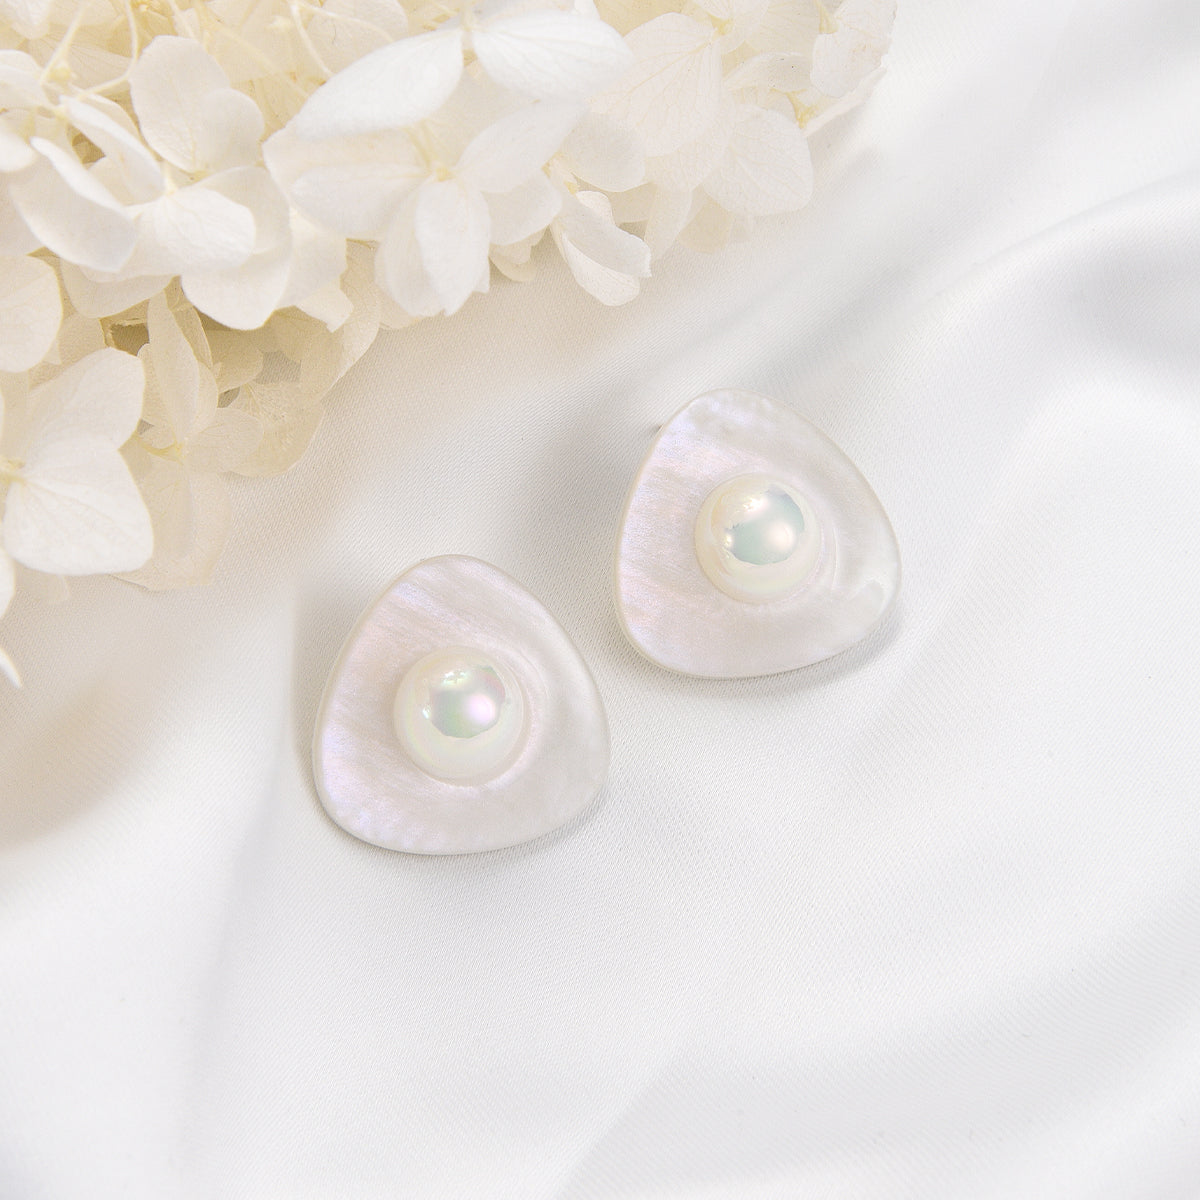 White pearls oasis custom earrings